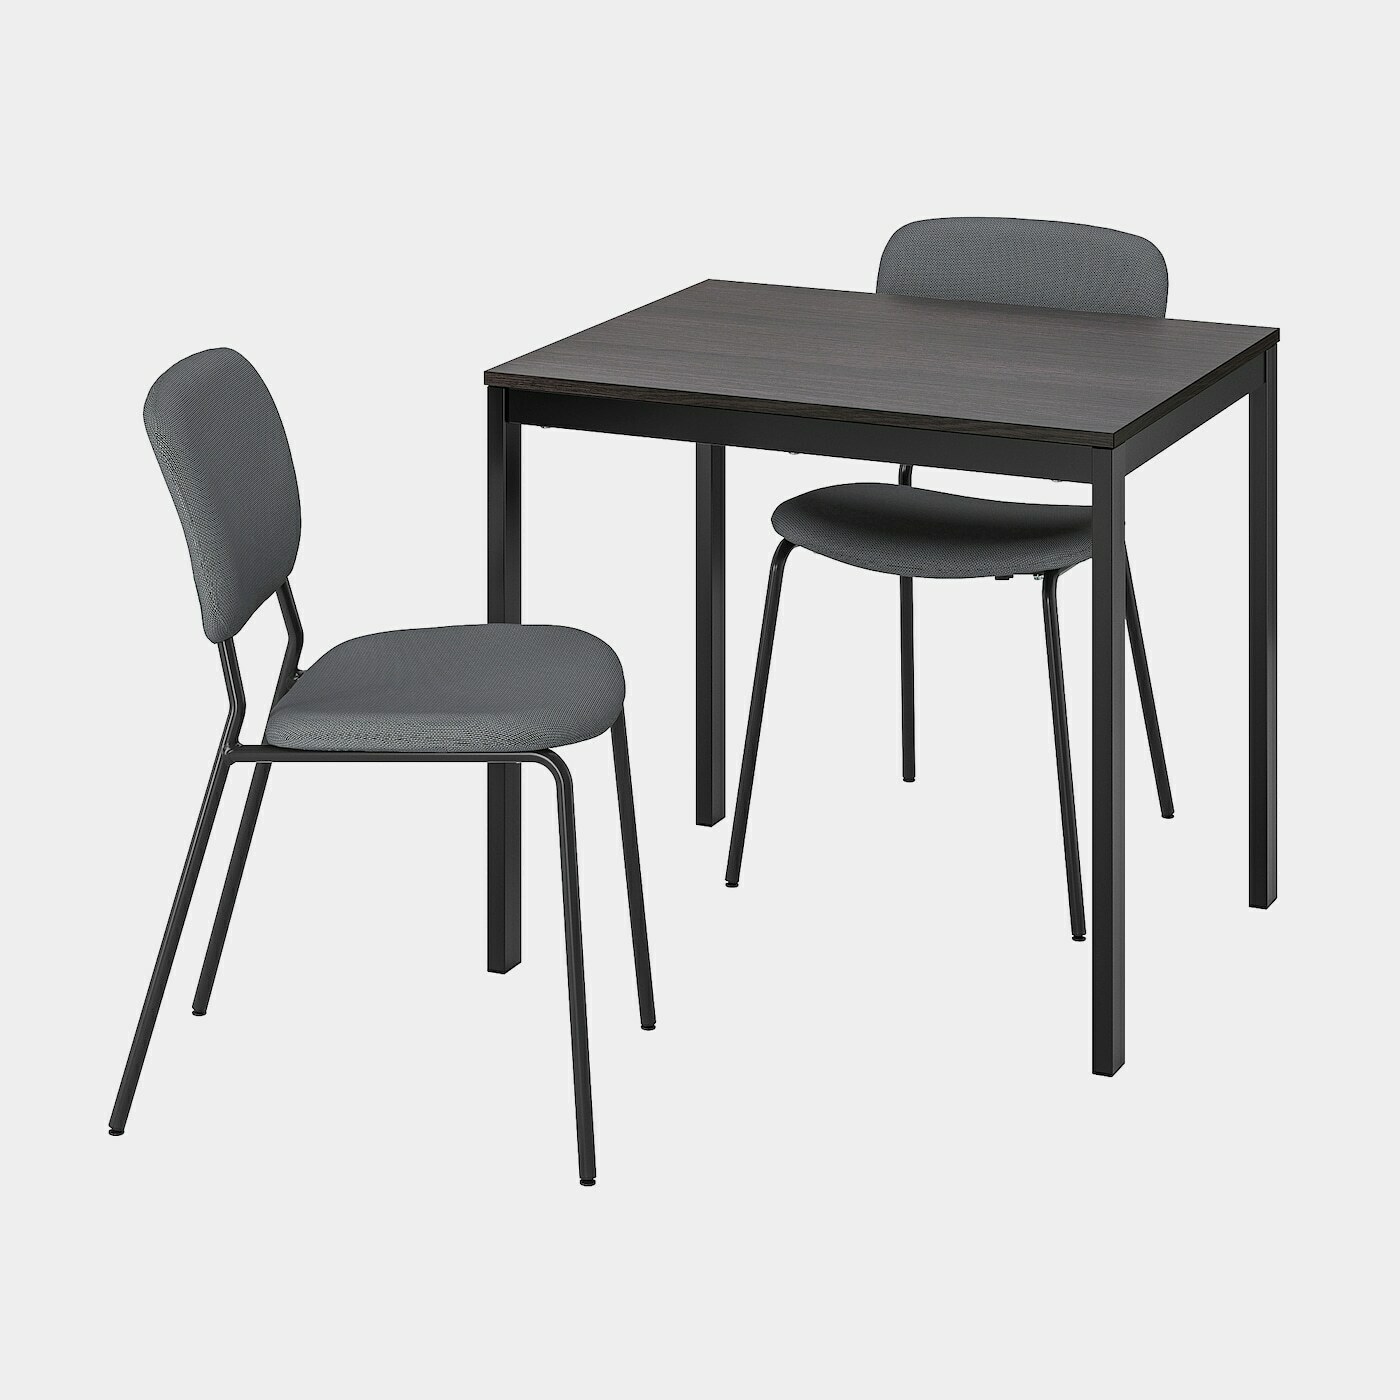 VANGSTA / KARLJAN Tisch und 2 Stühle  -  - Möbel Ideen für dein Zuhause von Home Trends. Möbel Trends von Social Media Influencer für dein Skandi Zuhause.